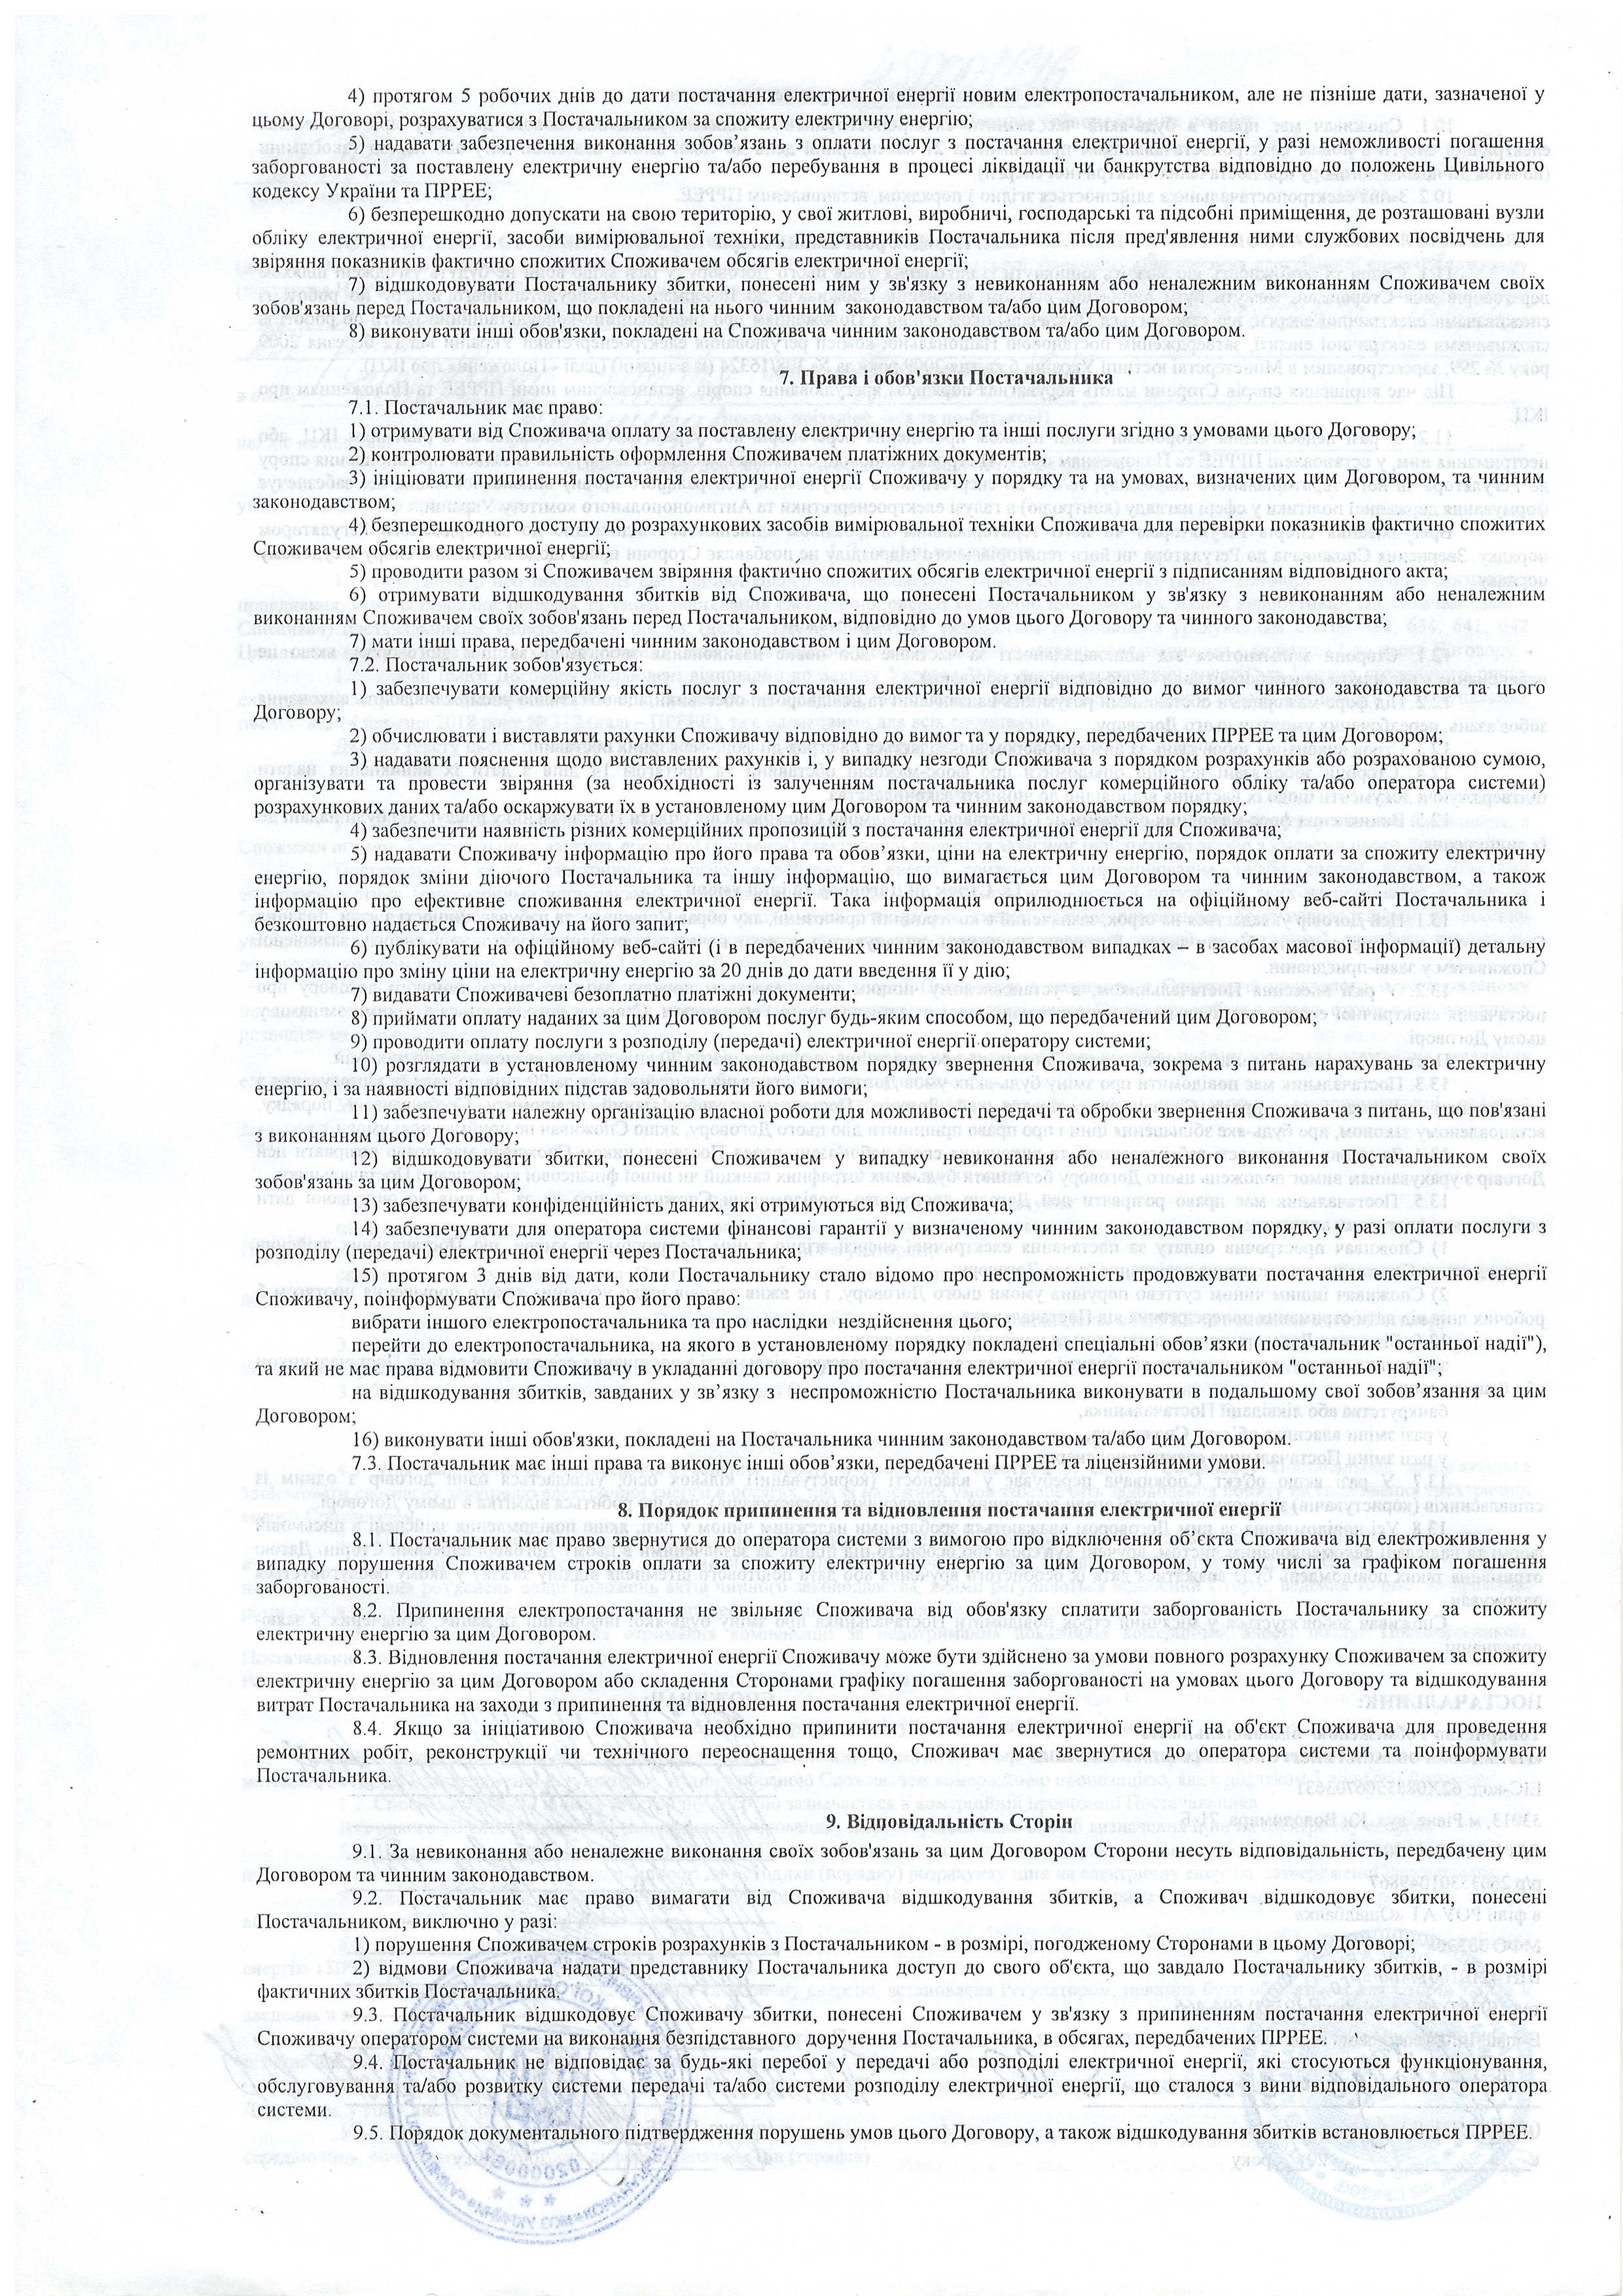 Договір №480001576 про постачання електричної енергії  постачальником універсальних послуг ст.3